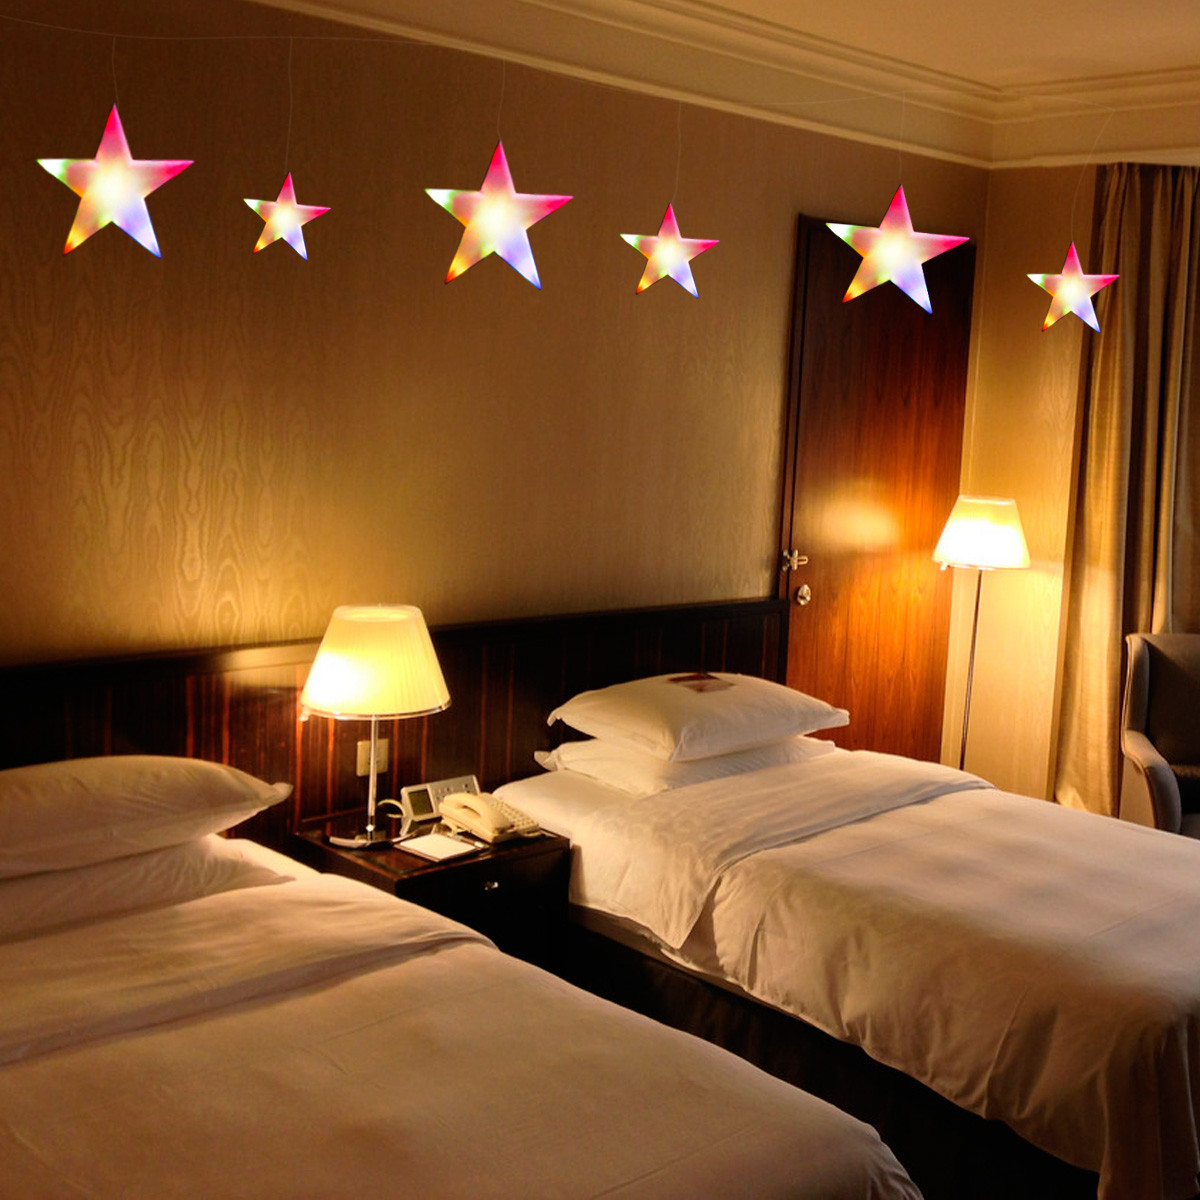 Star String Lights For Bedroom
 60LED Xmas String Fairy Curtain Star Light Bedroom Wedding